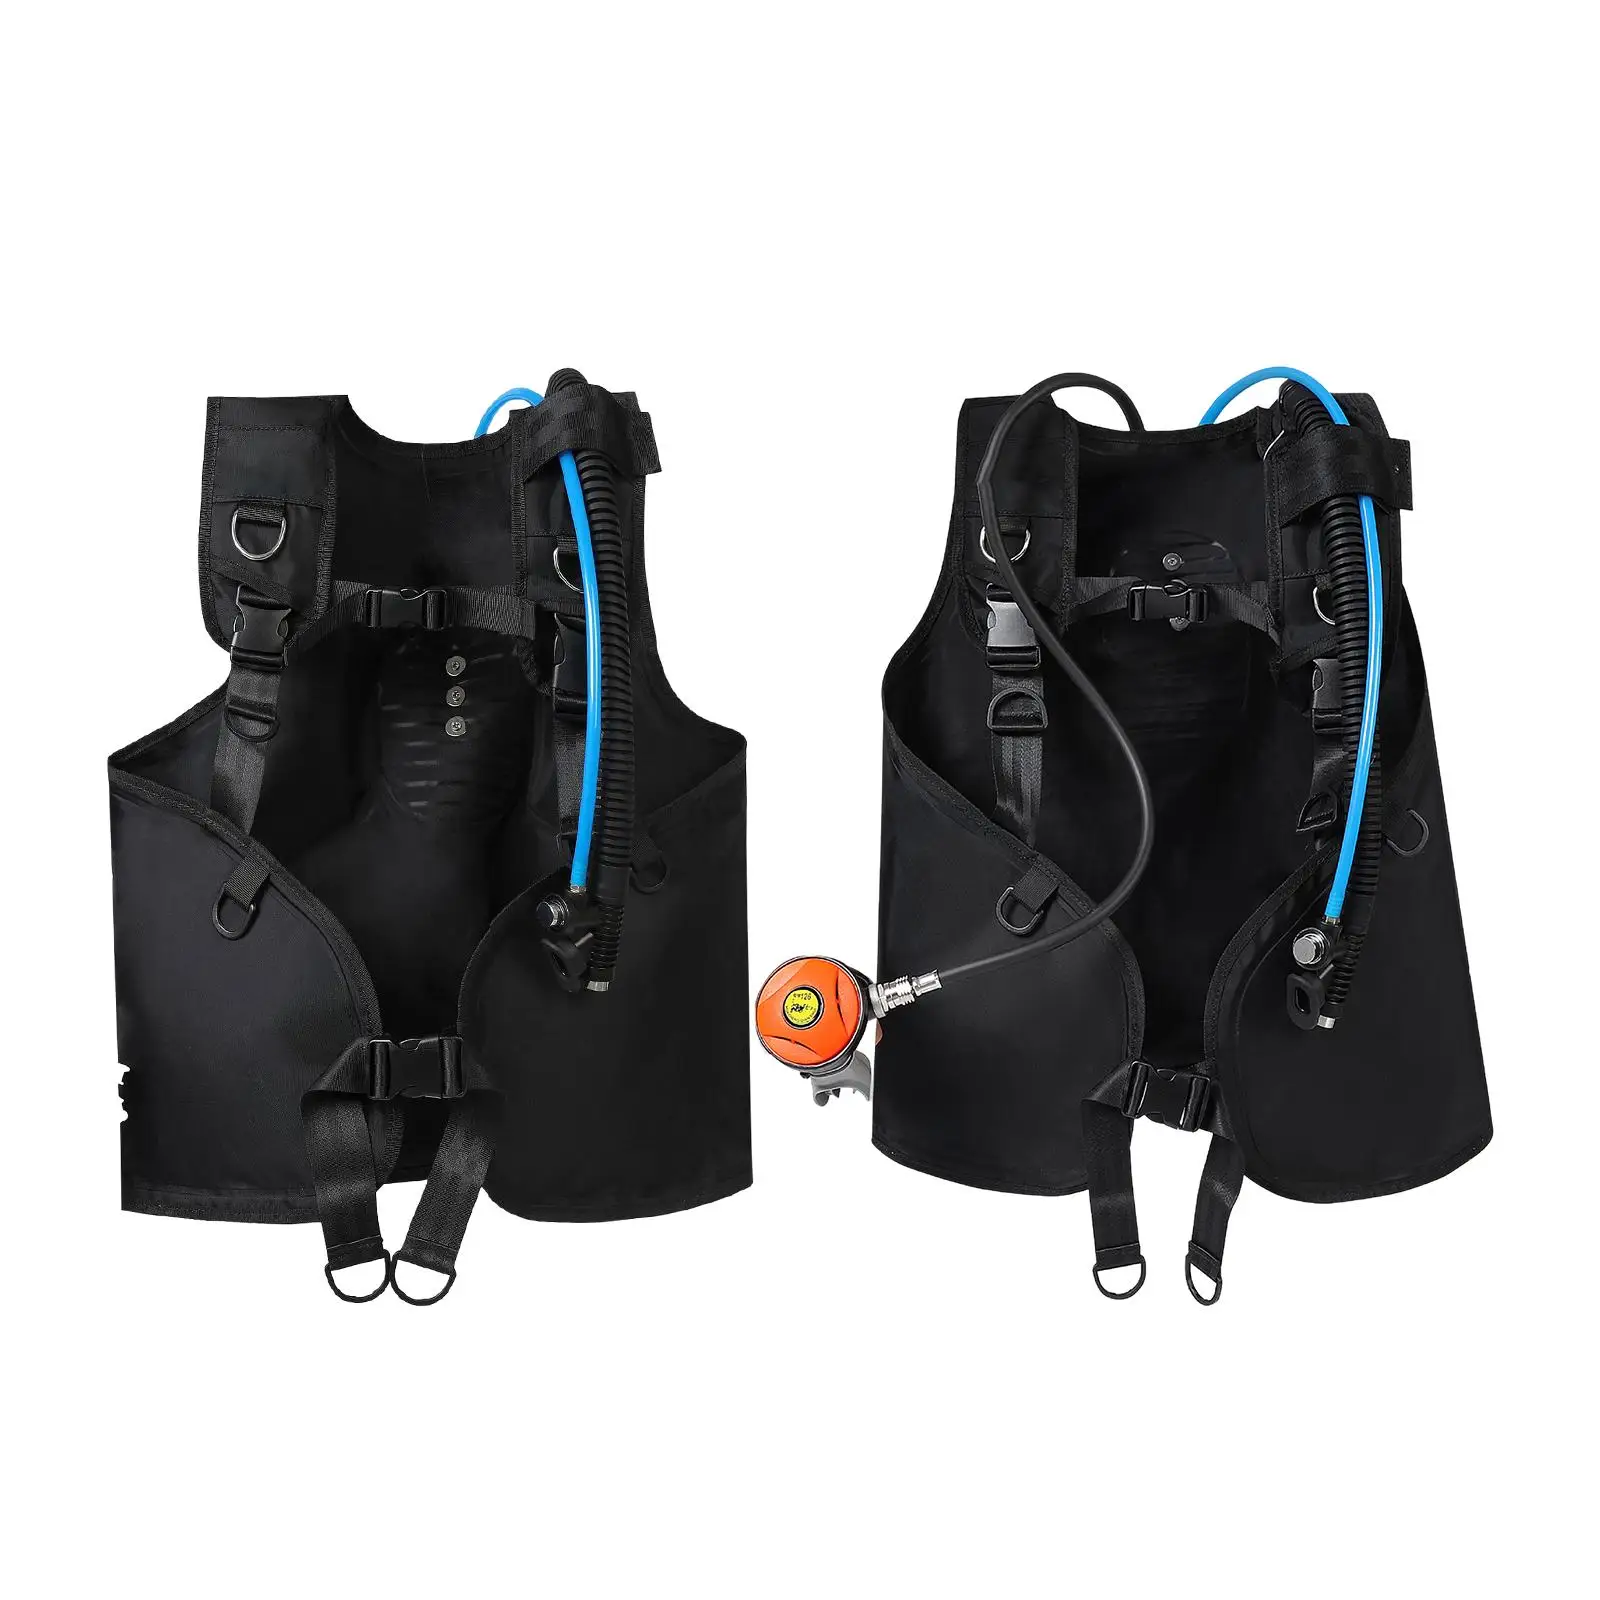 BCD Vest Surfing Snorkeling Jacket Style Swim Portable Diving Scuba Vest Quick Dry Water Sports Durable Scuba Diving Vest